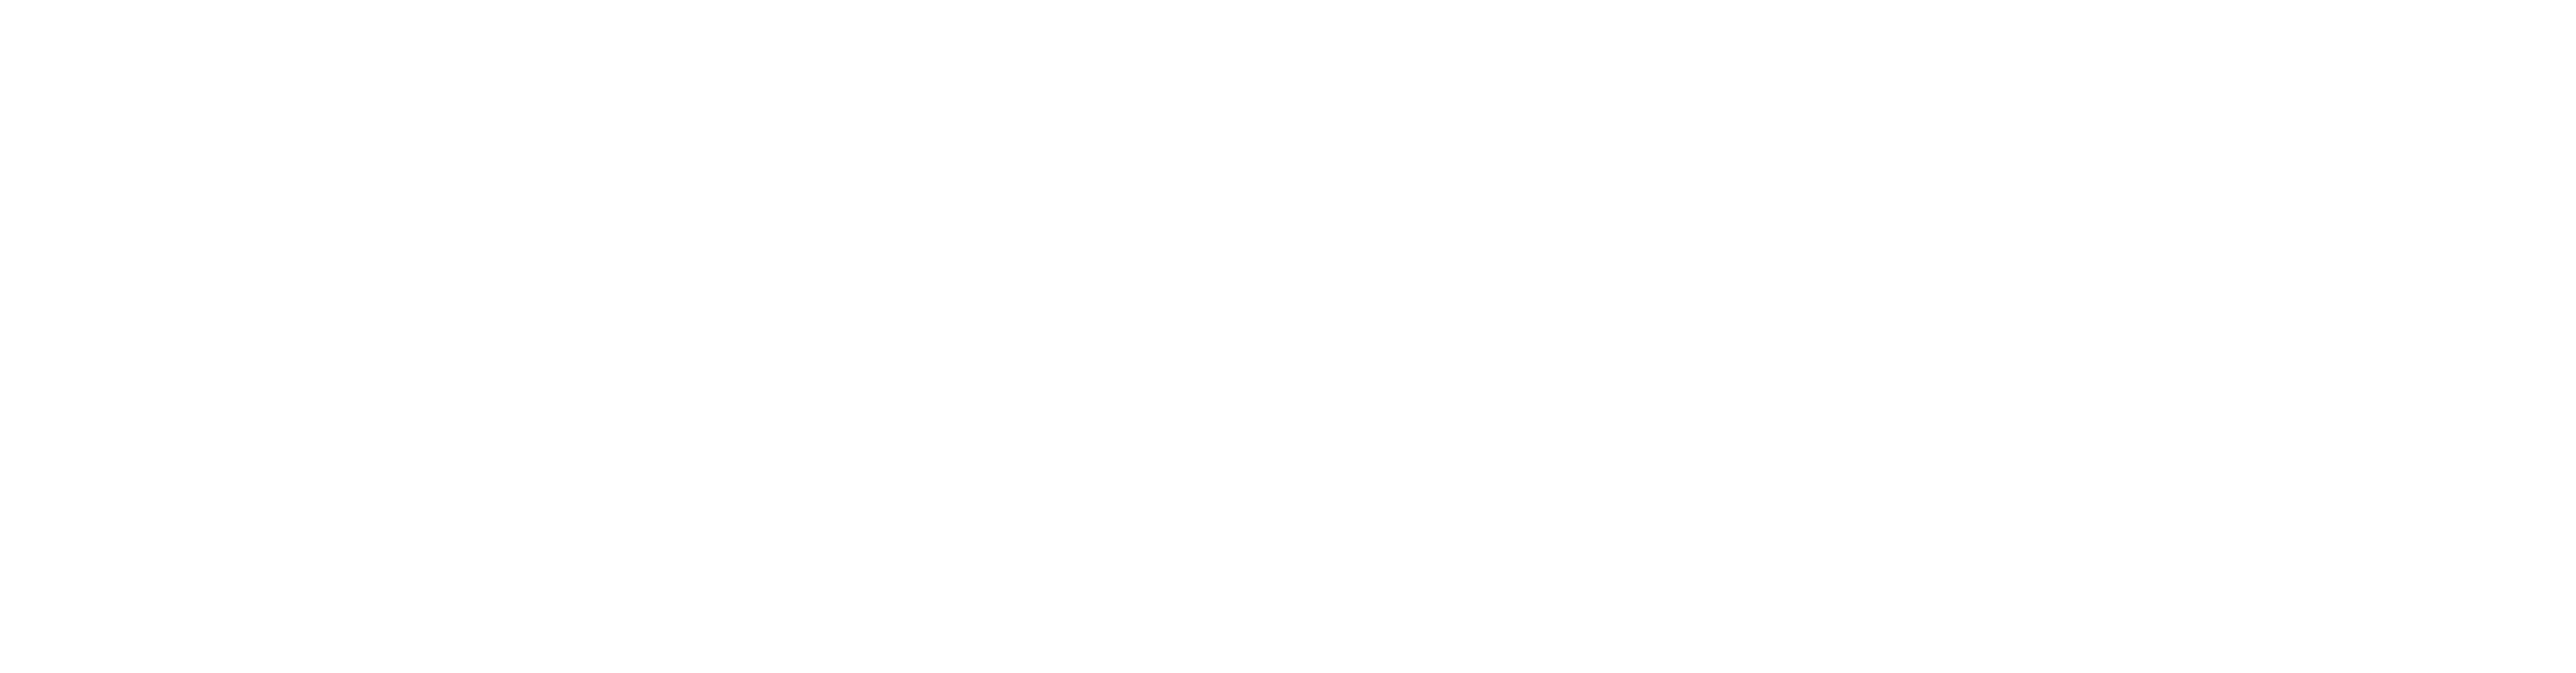 Financiado por la unión europea Next generation EU